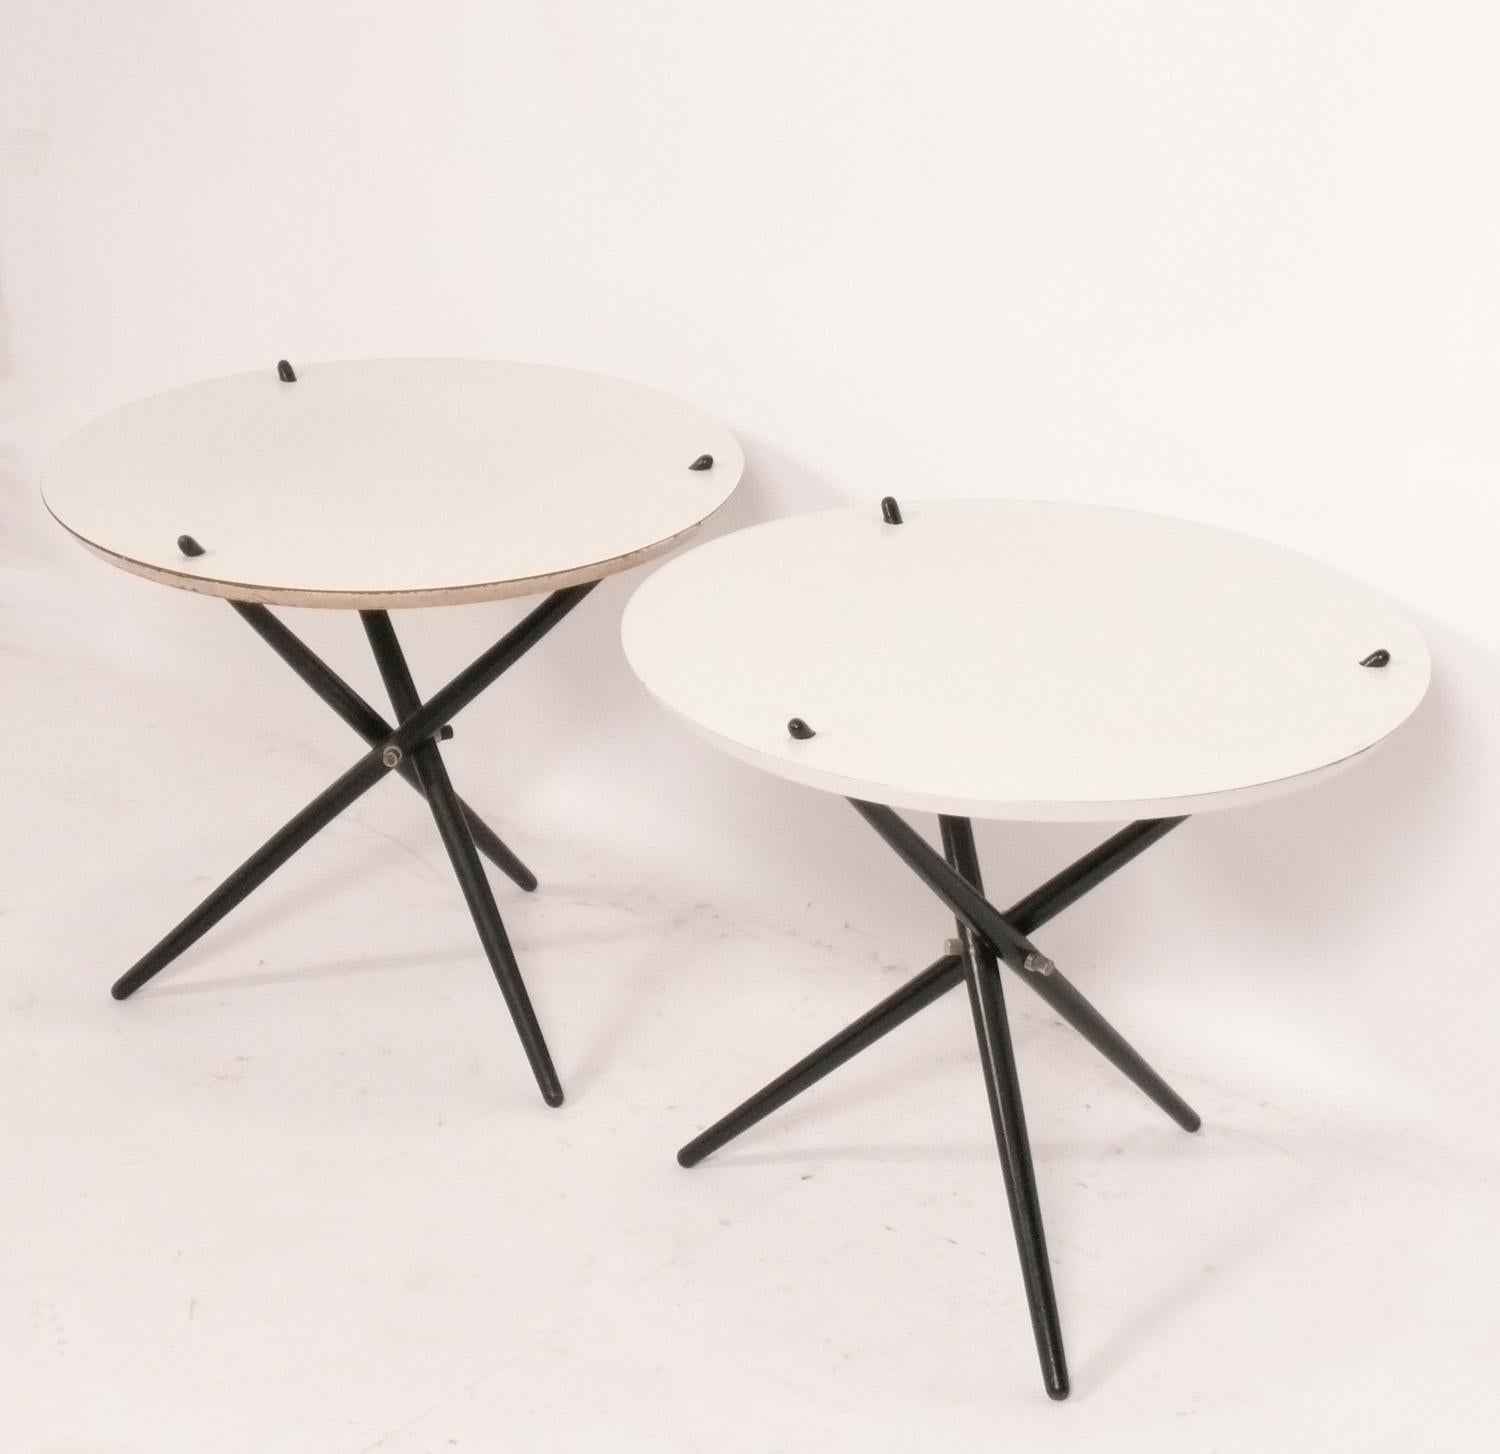 Skulpturale Dreibein-Tische, entworfen von Hans Bellmann für Knoll, amerikanisch, ca. 1960er Jahre. Sie haben eine vielseitige Größe und können als Beistell- oder Ablagetisch oder als Nachttisch verwendet werden. Pflegeleichte weiße Laminatplatten